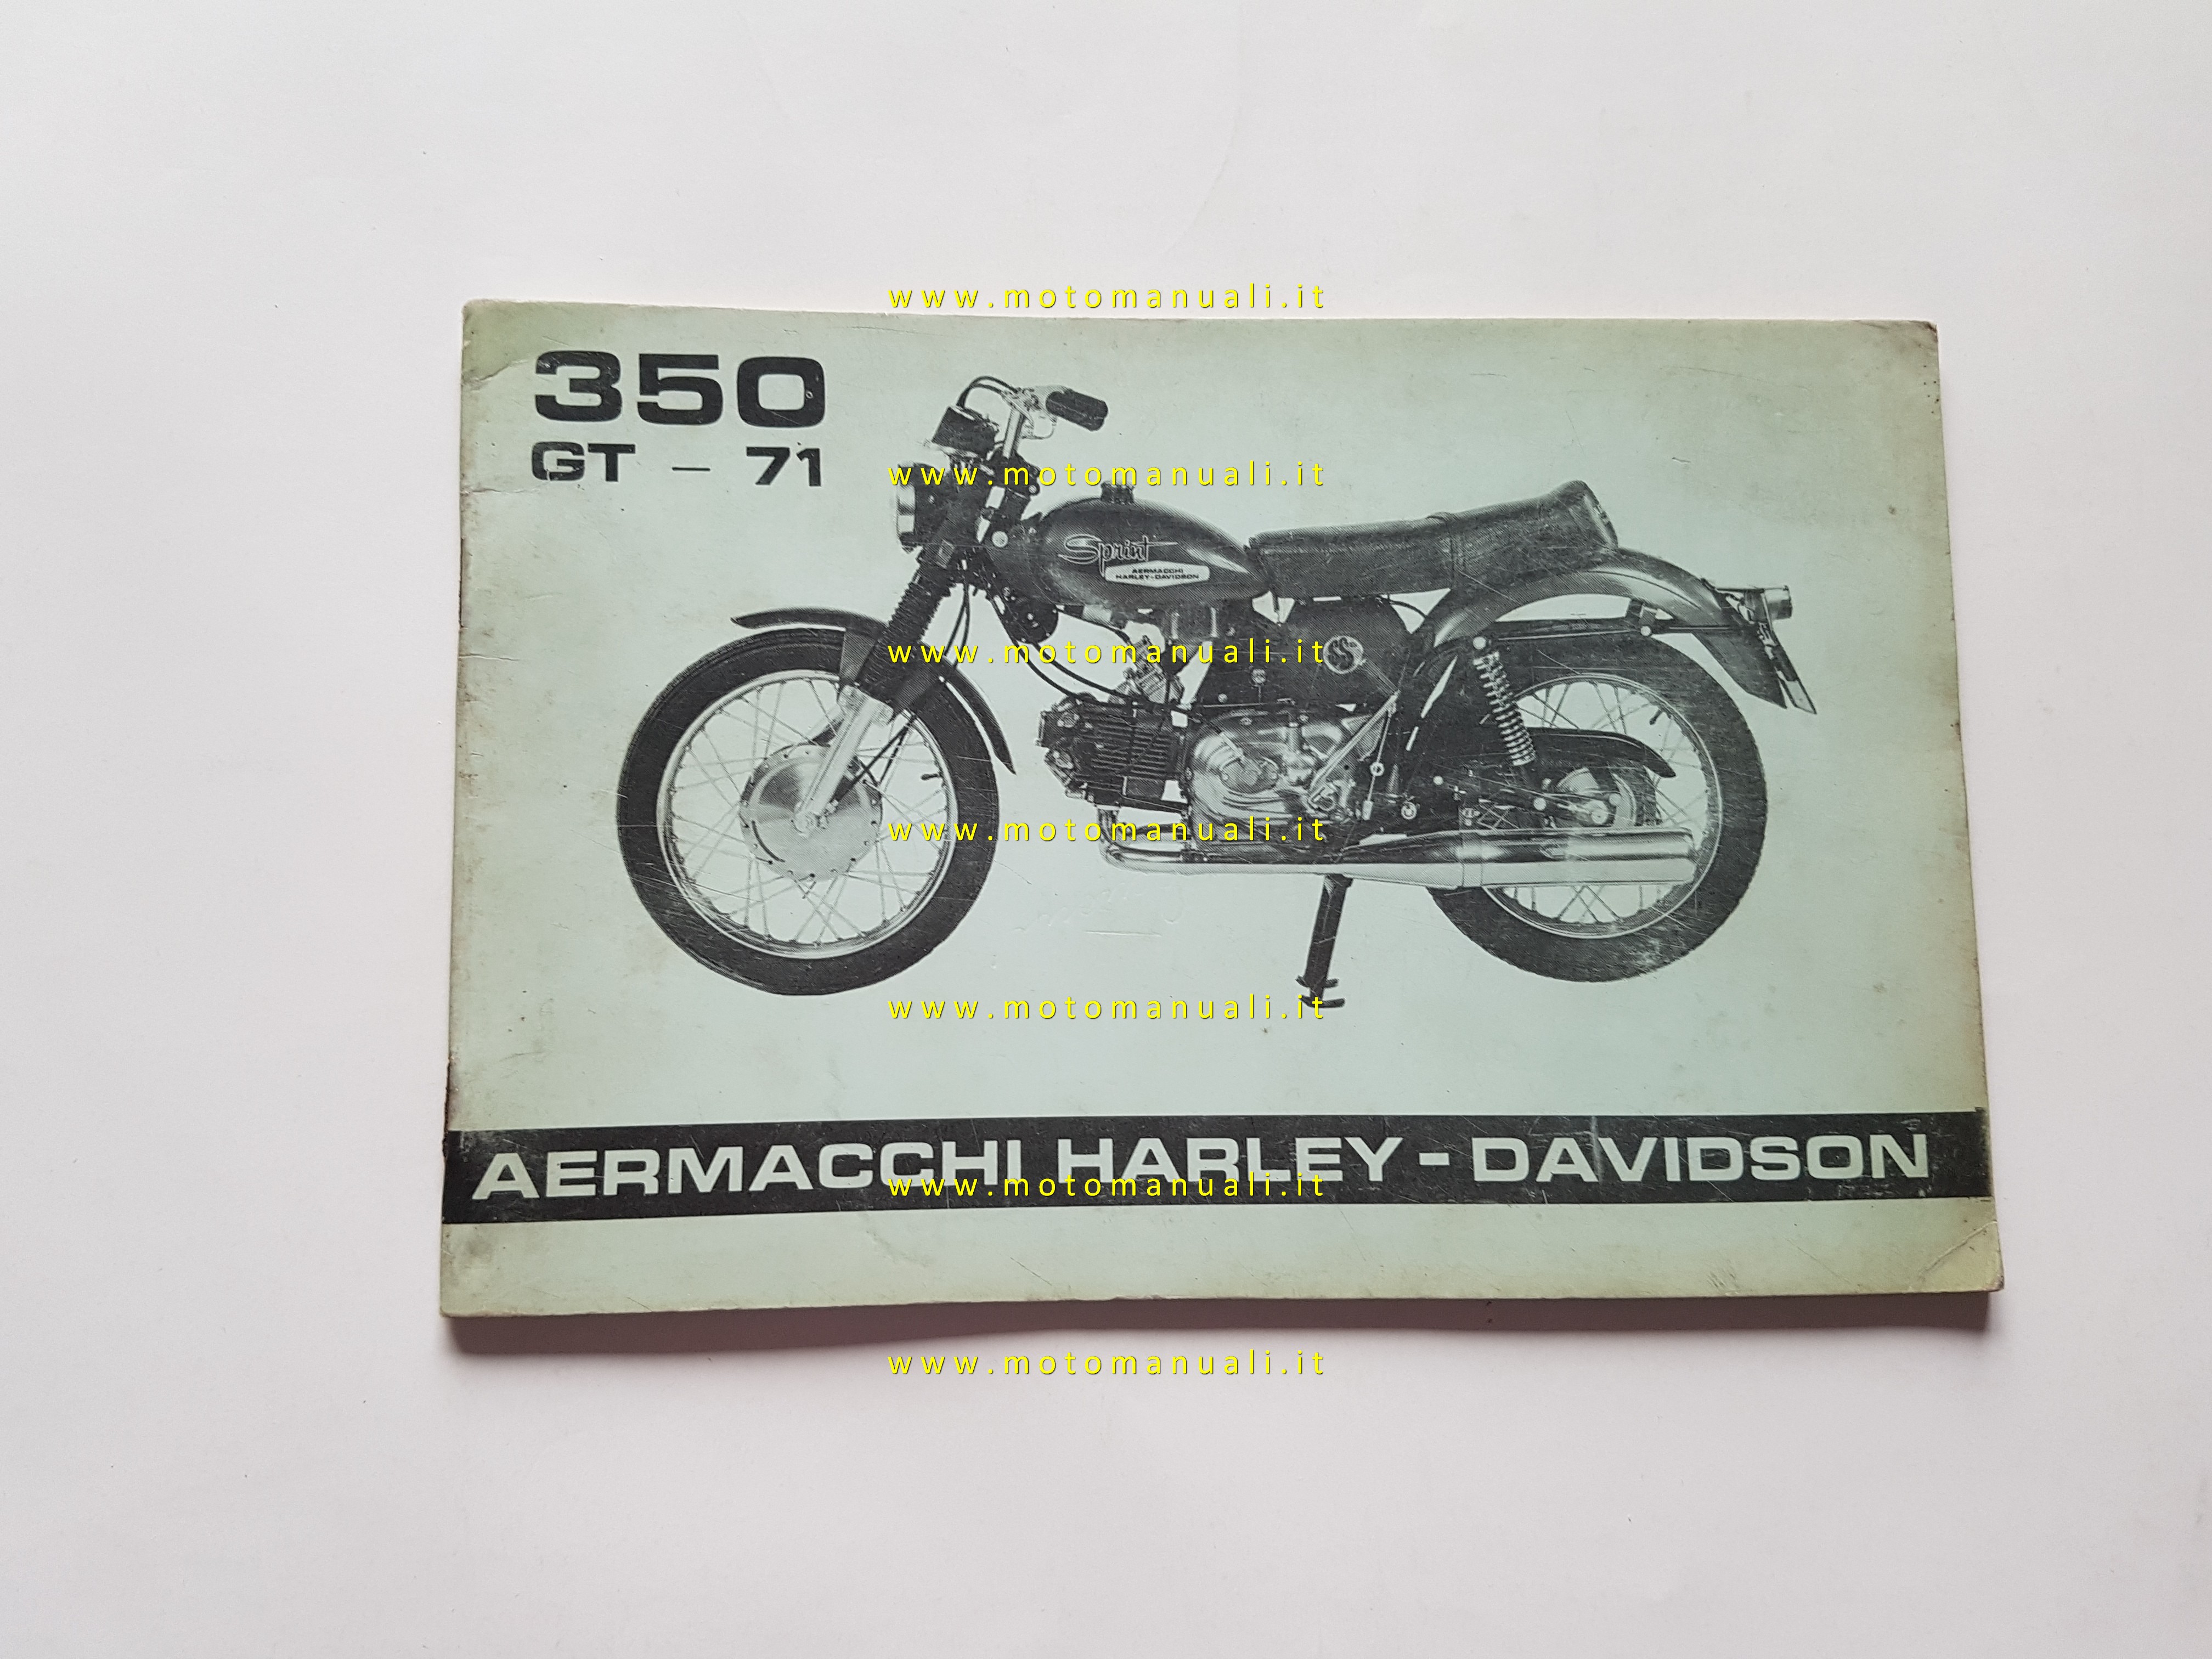 Aermacchi Harley-Davidson 350 GT 1971 manuale uso libretto italiano originale